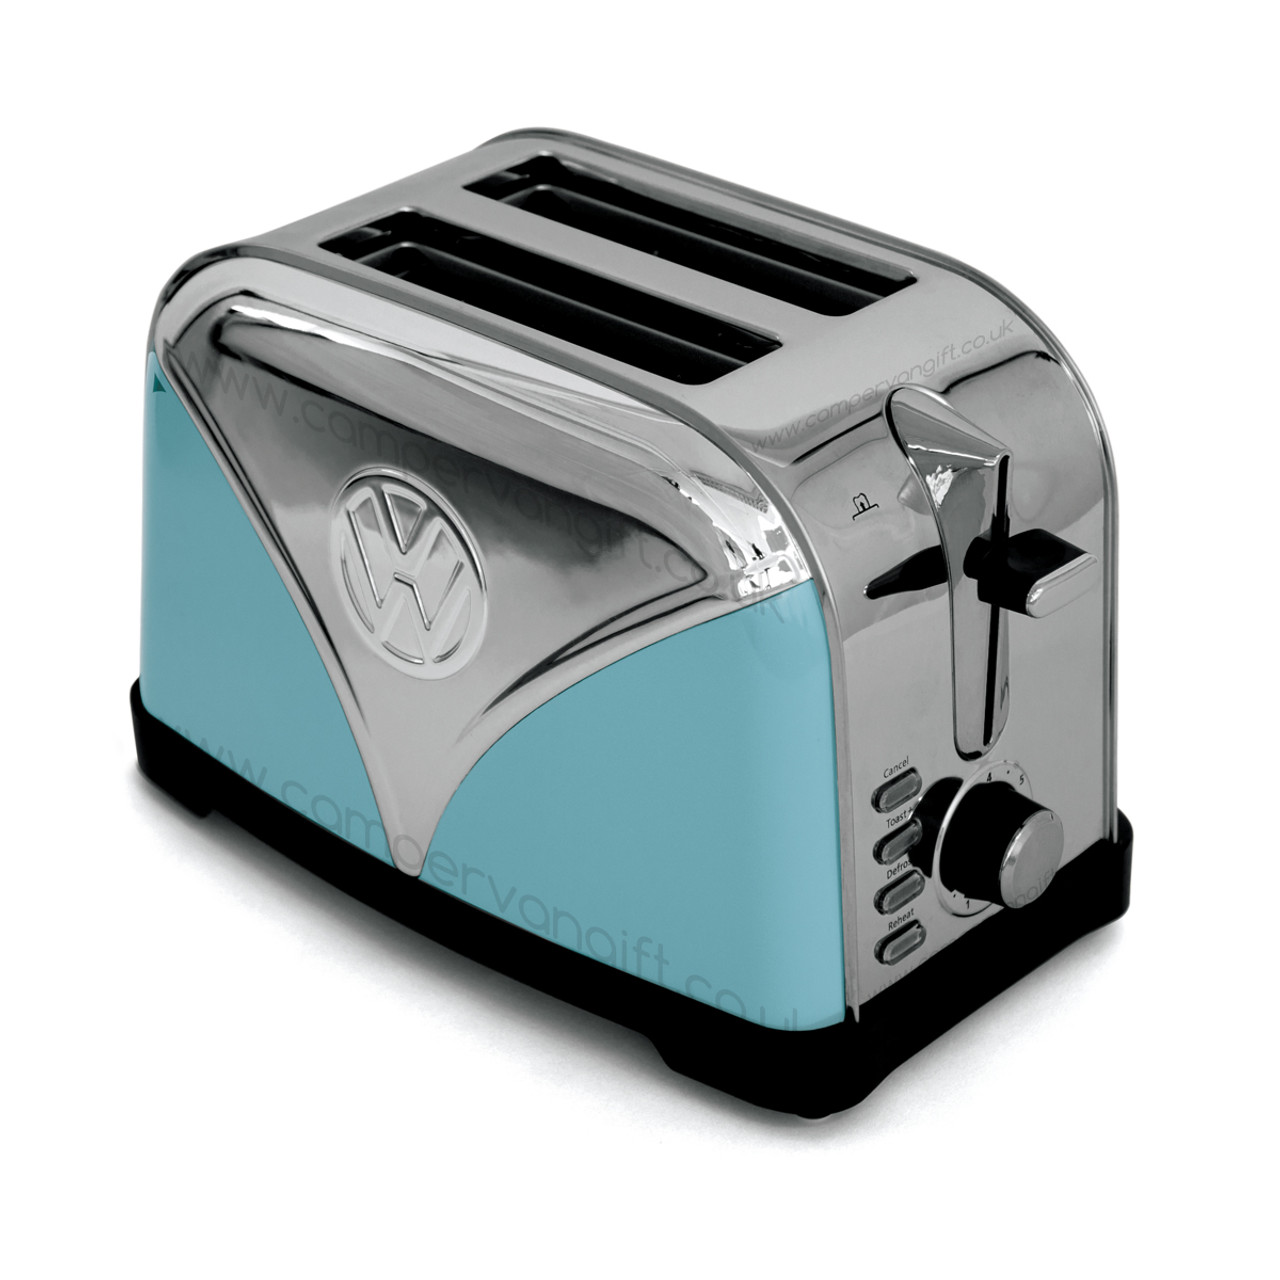 Vooruitzien Betrouwbaar Viva Volkswagen Campervan Toaster - VW Campervan inspired Toaster in Blue. Fetch  the Bread Now